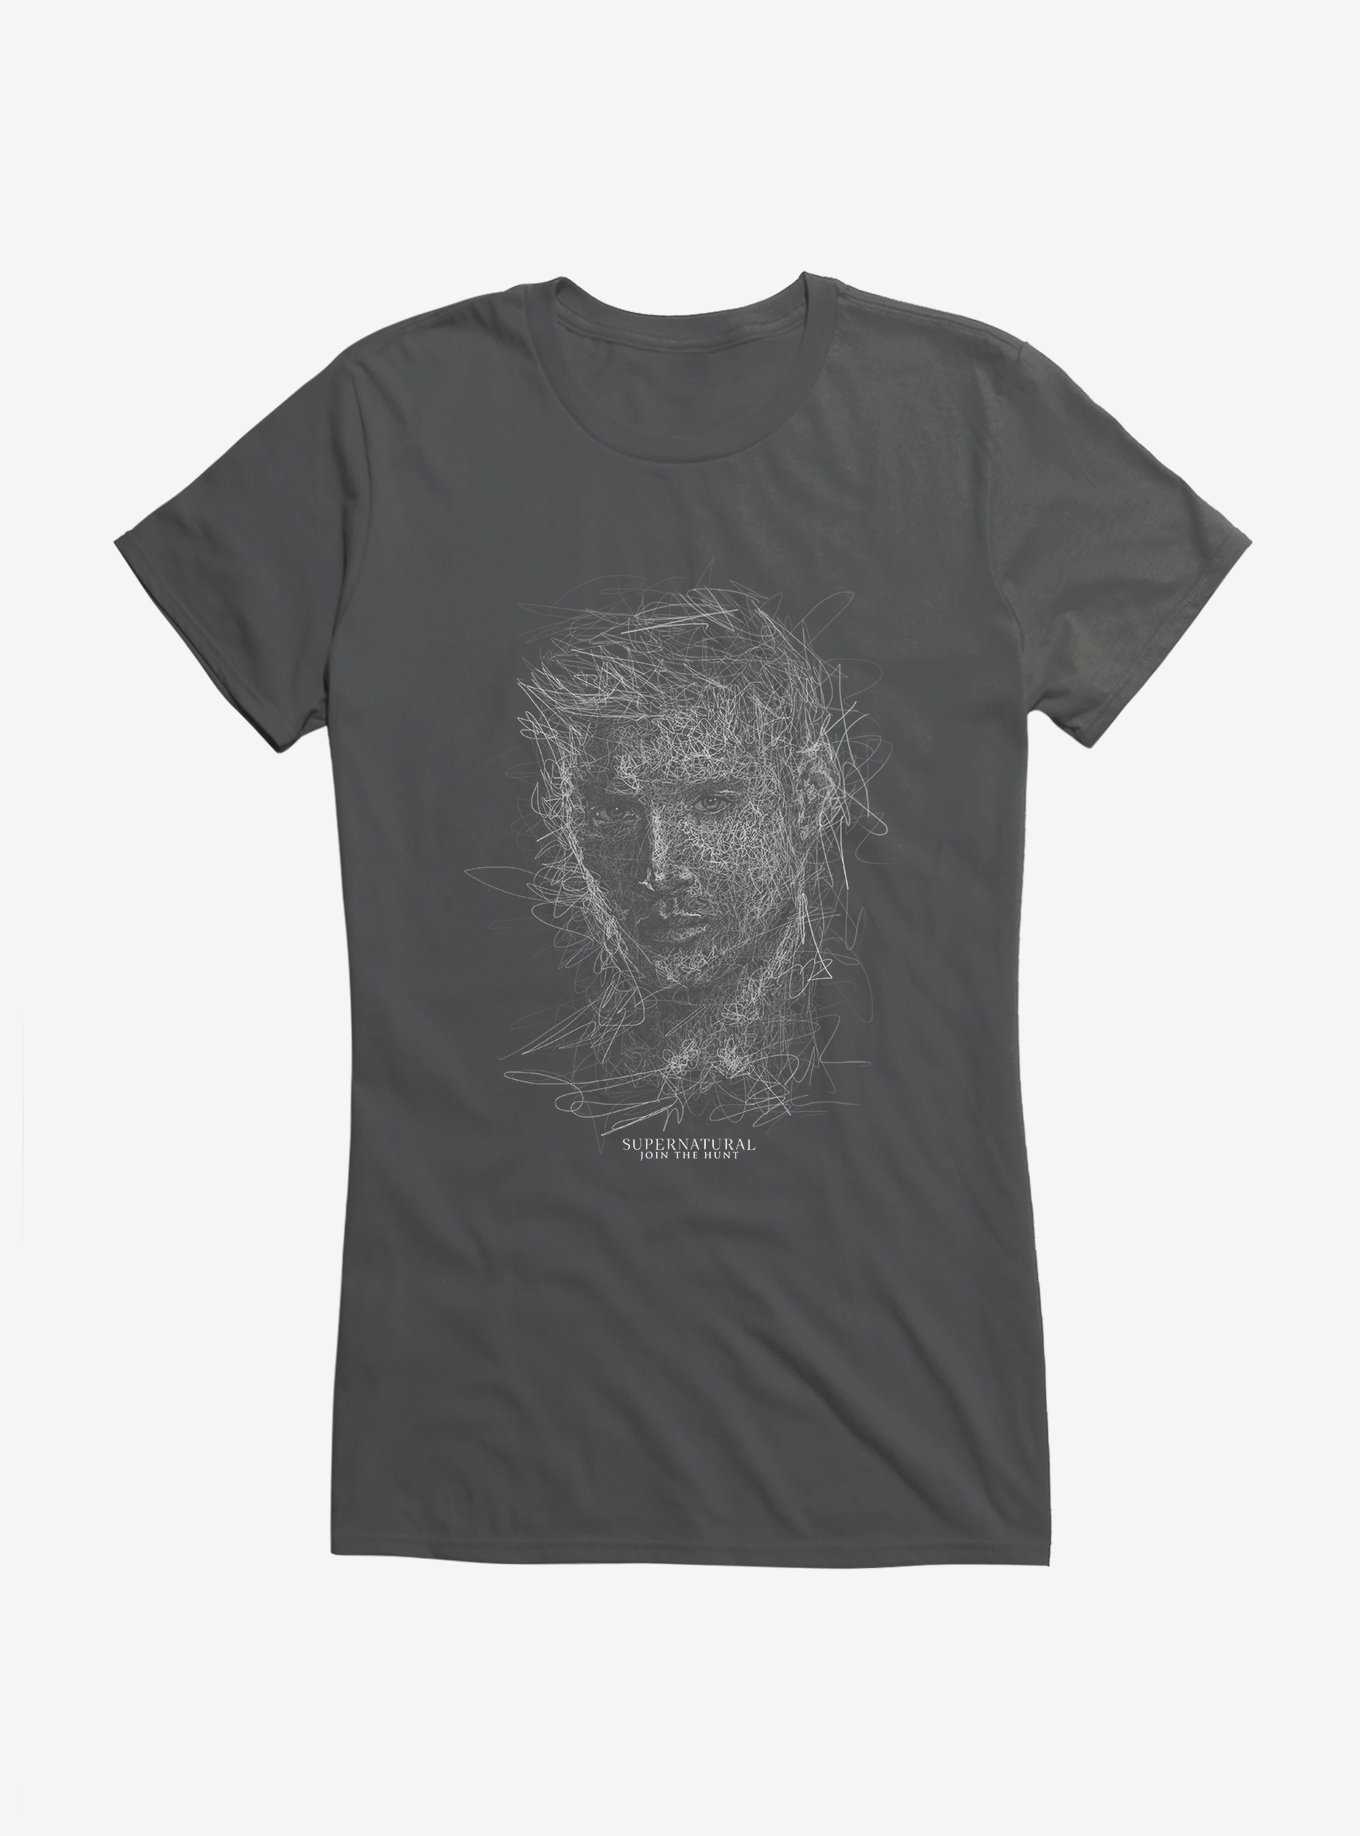 Supernatural Dean Squiggle Sketch Girl's T-Shirt, , hi-res